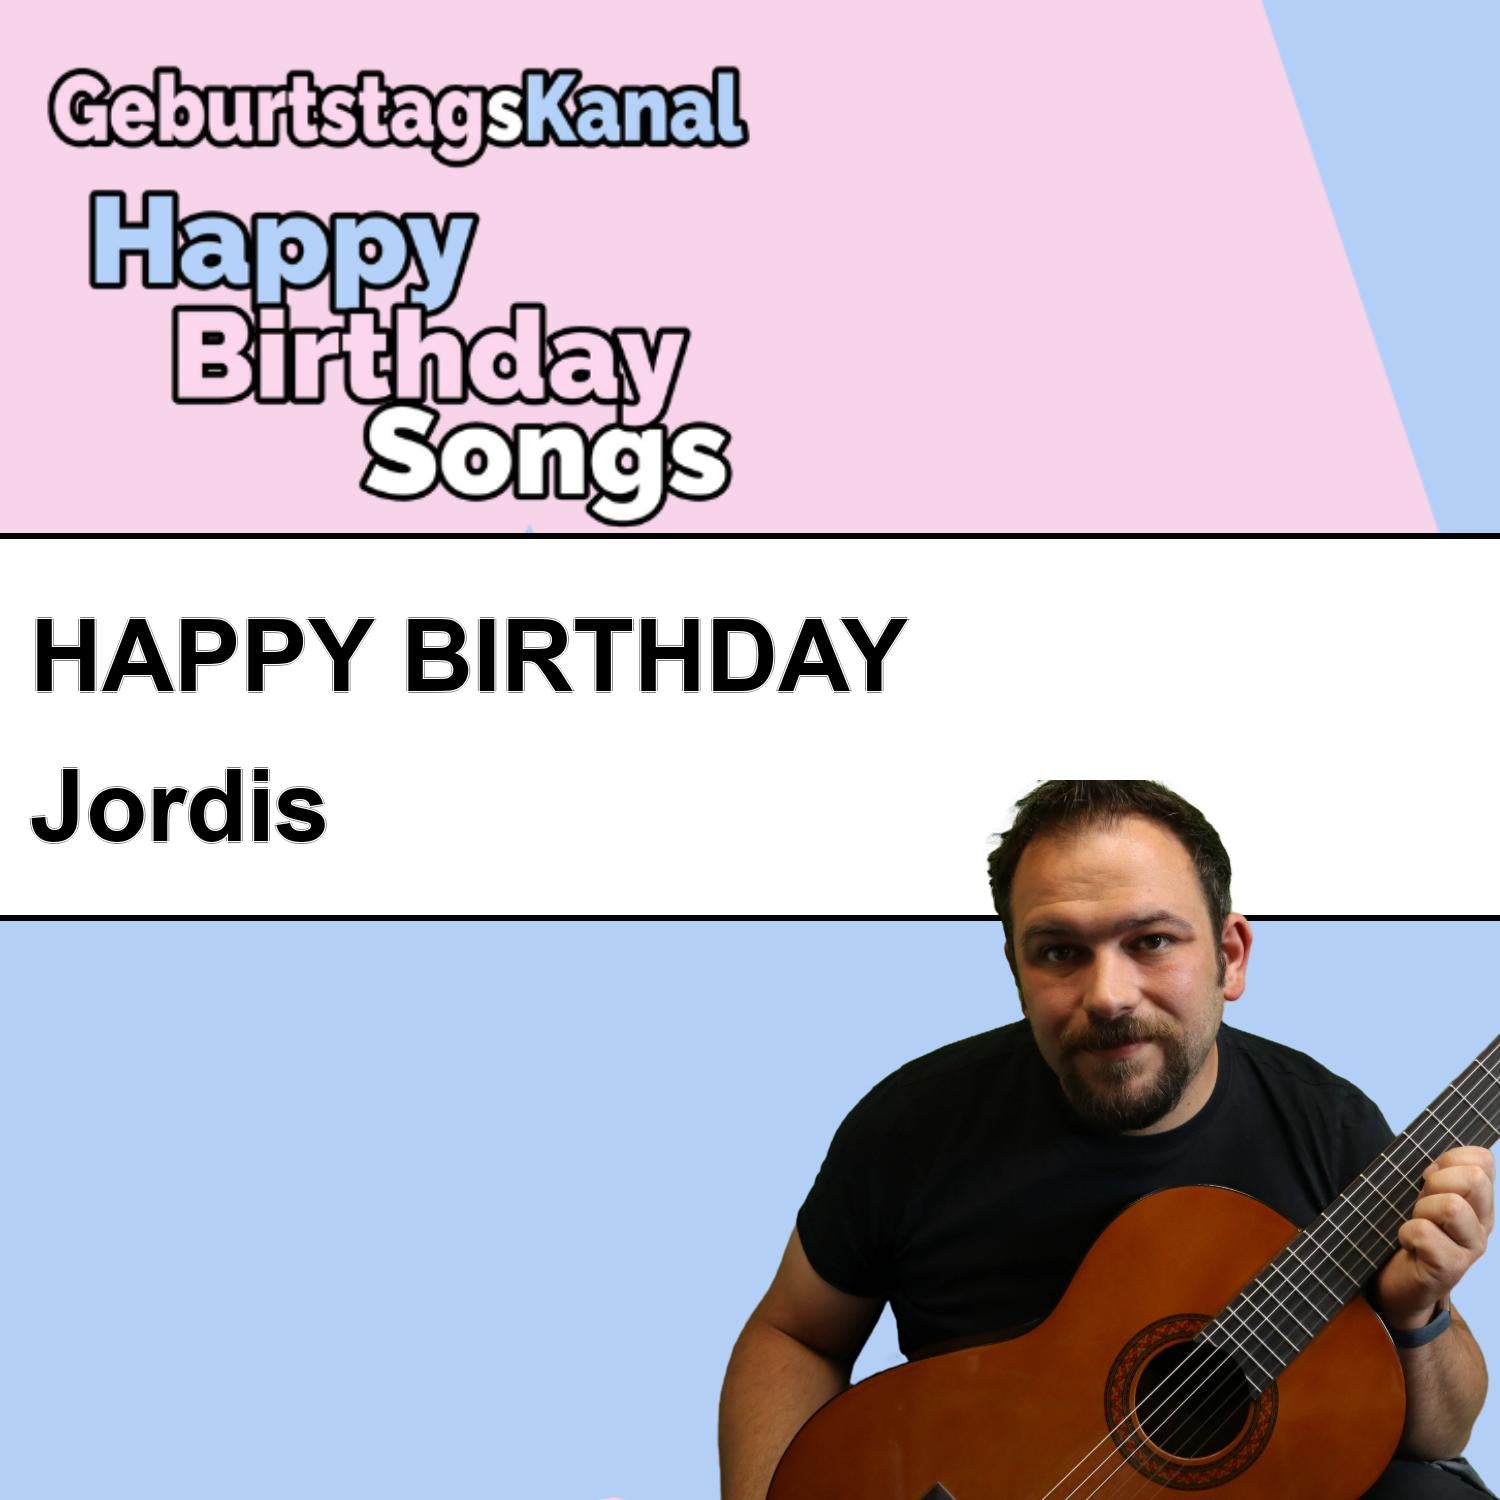 Produktbild Happy Birthday to you Jordis mit Wunschgrußbotschaft